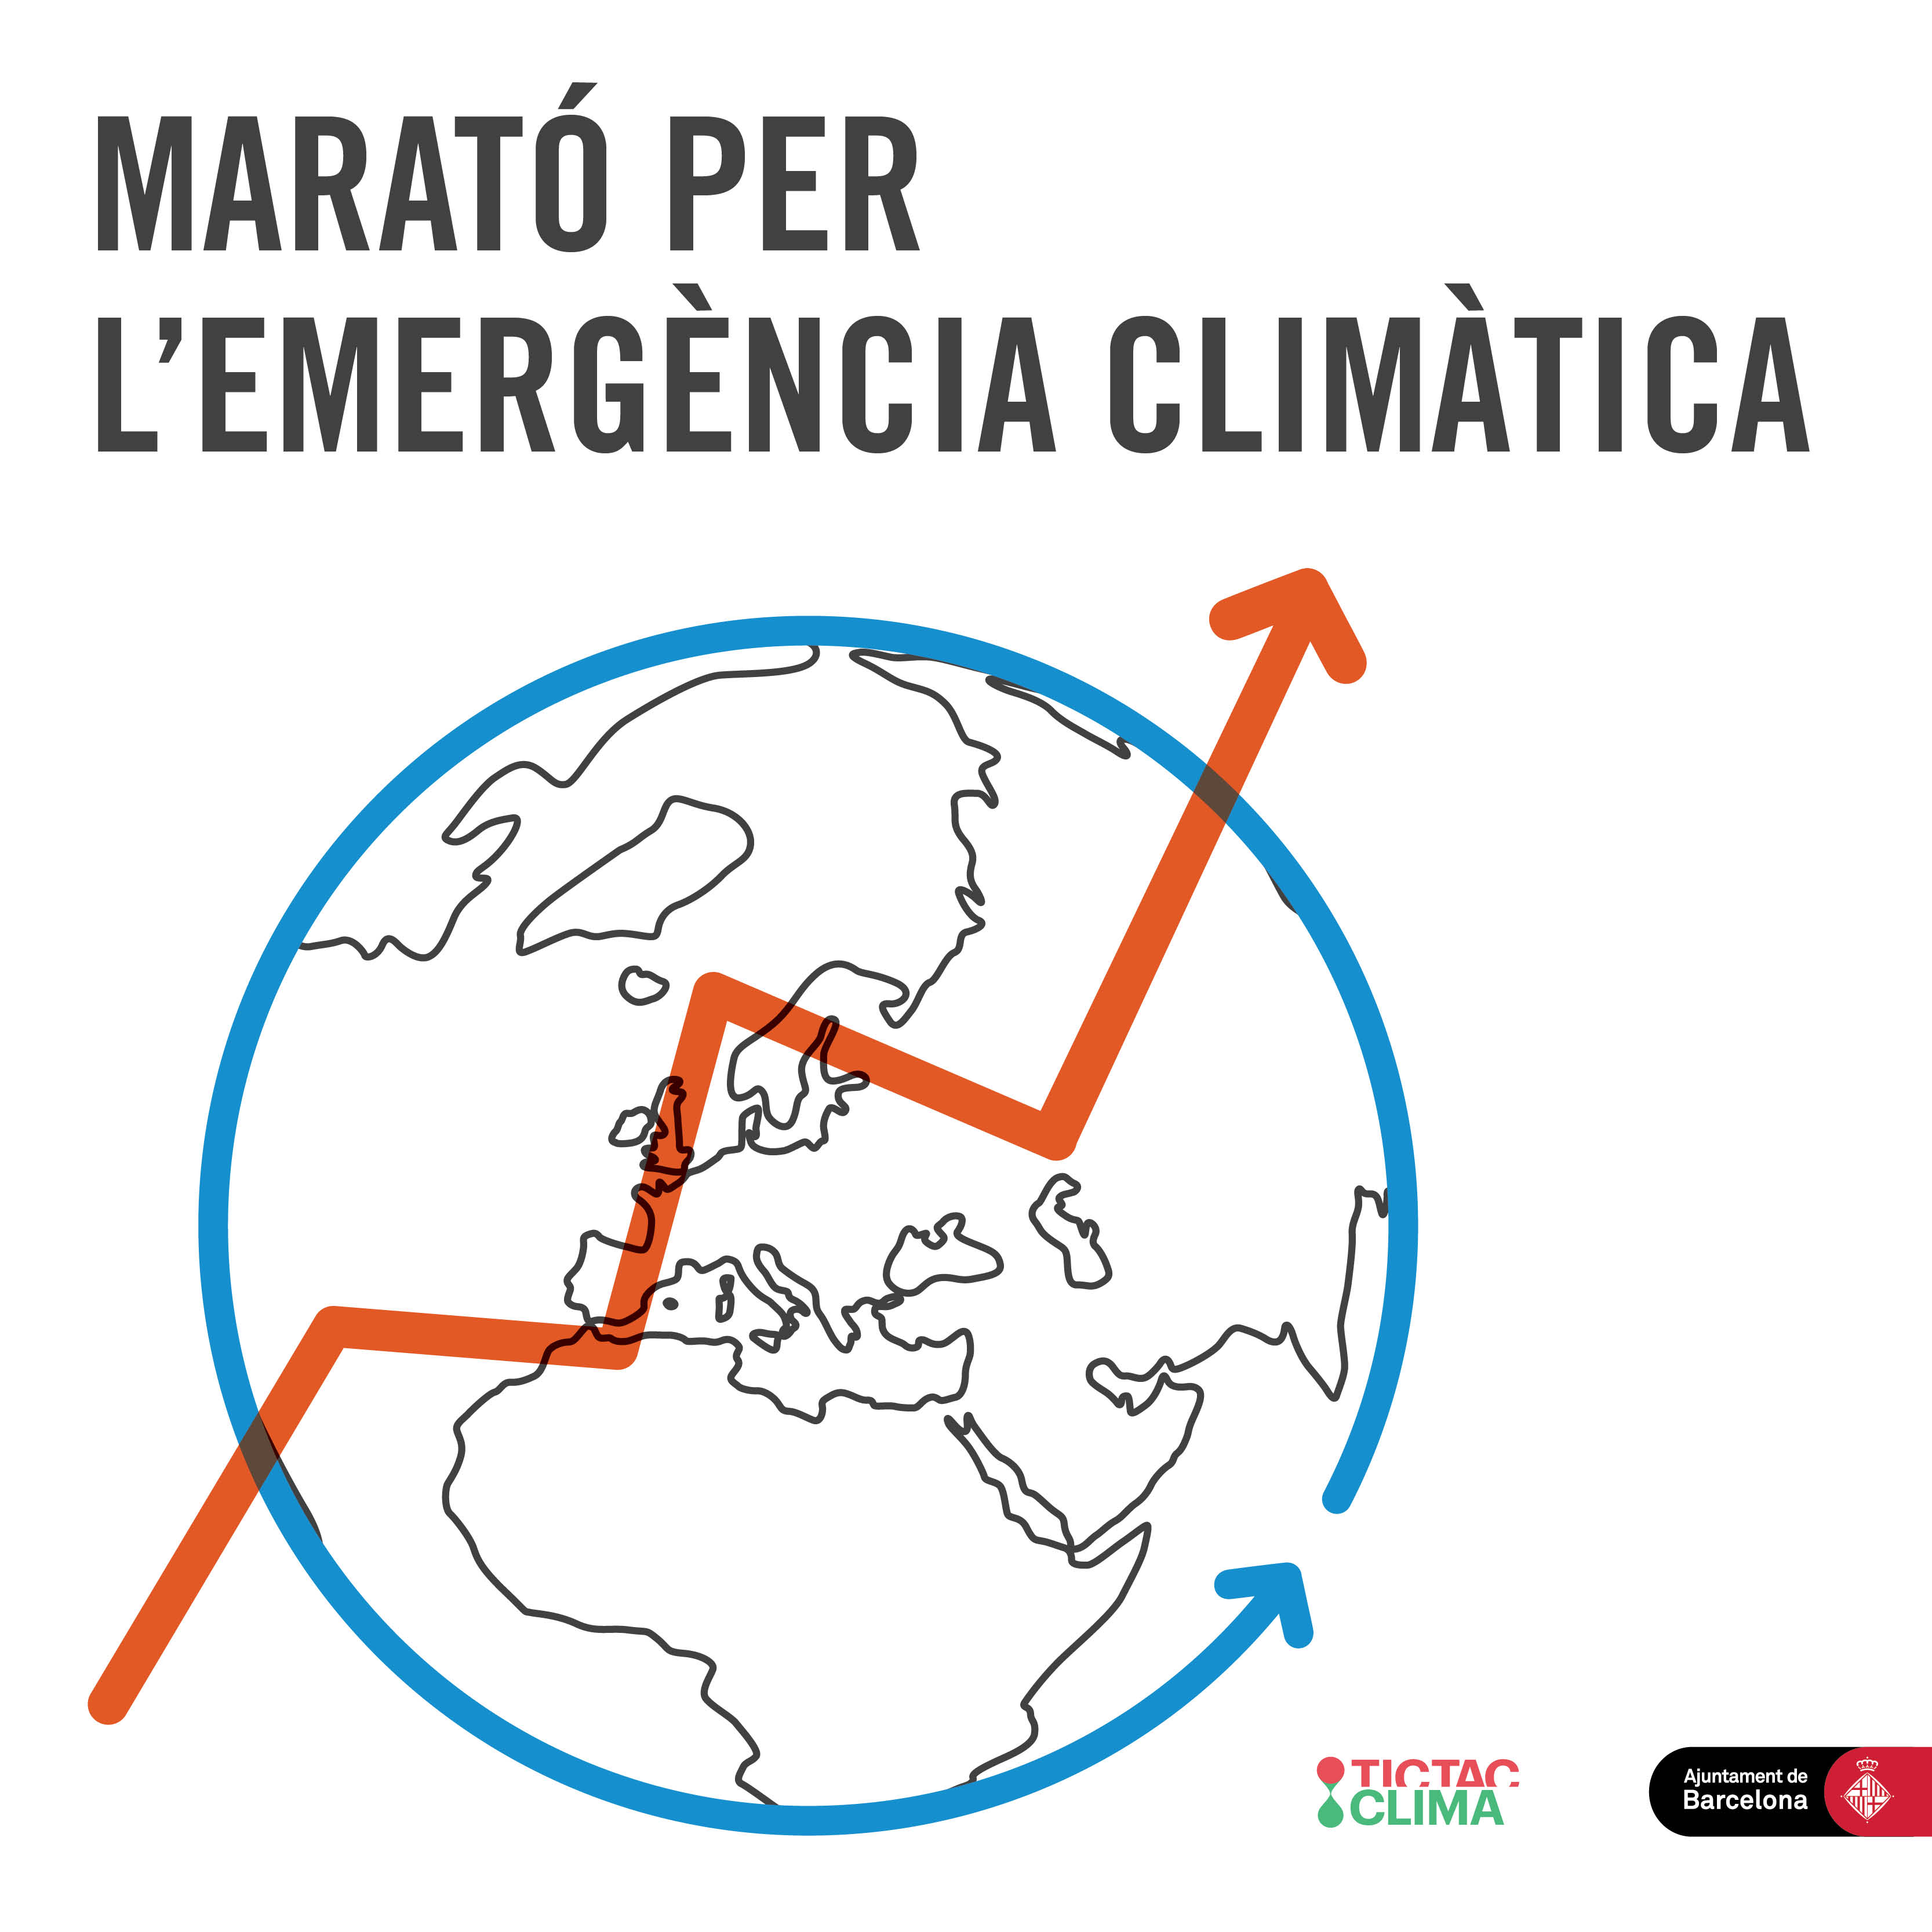 Marató per l'emergència climàtica